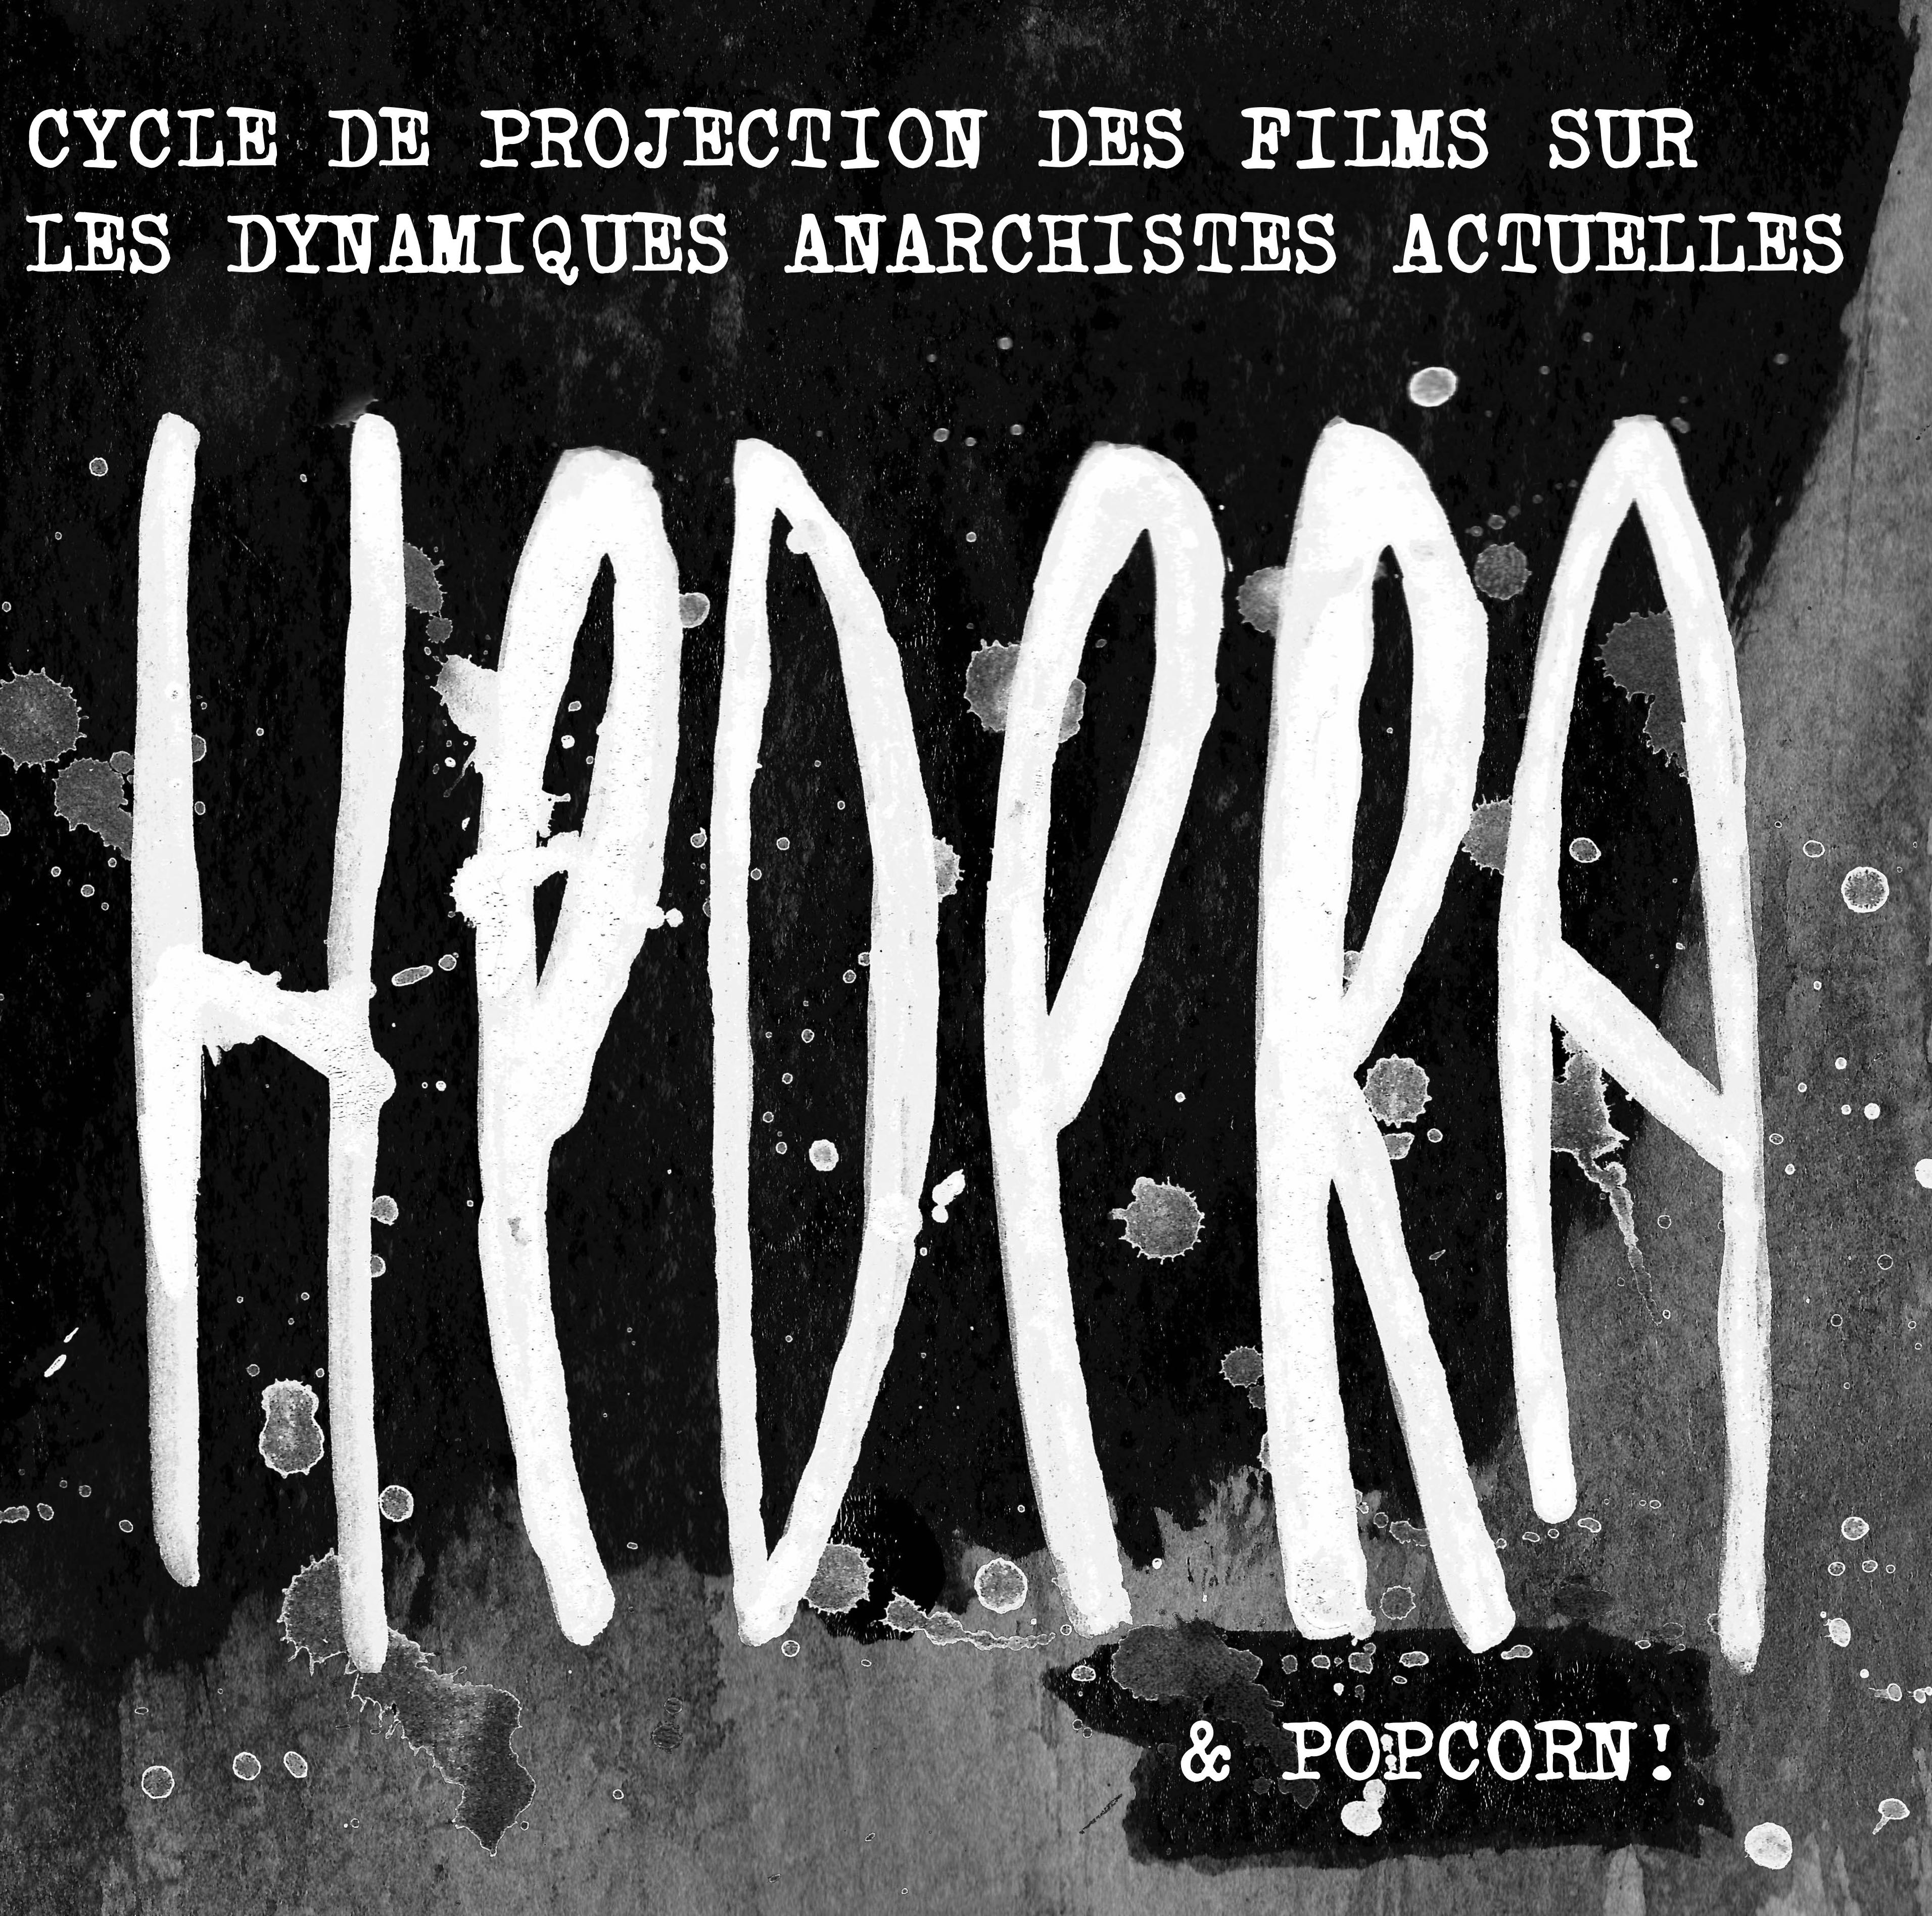 Projection-débat : Films Hédéra - "Les dynamiques anarchistes actuelles"